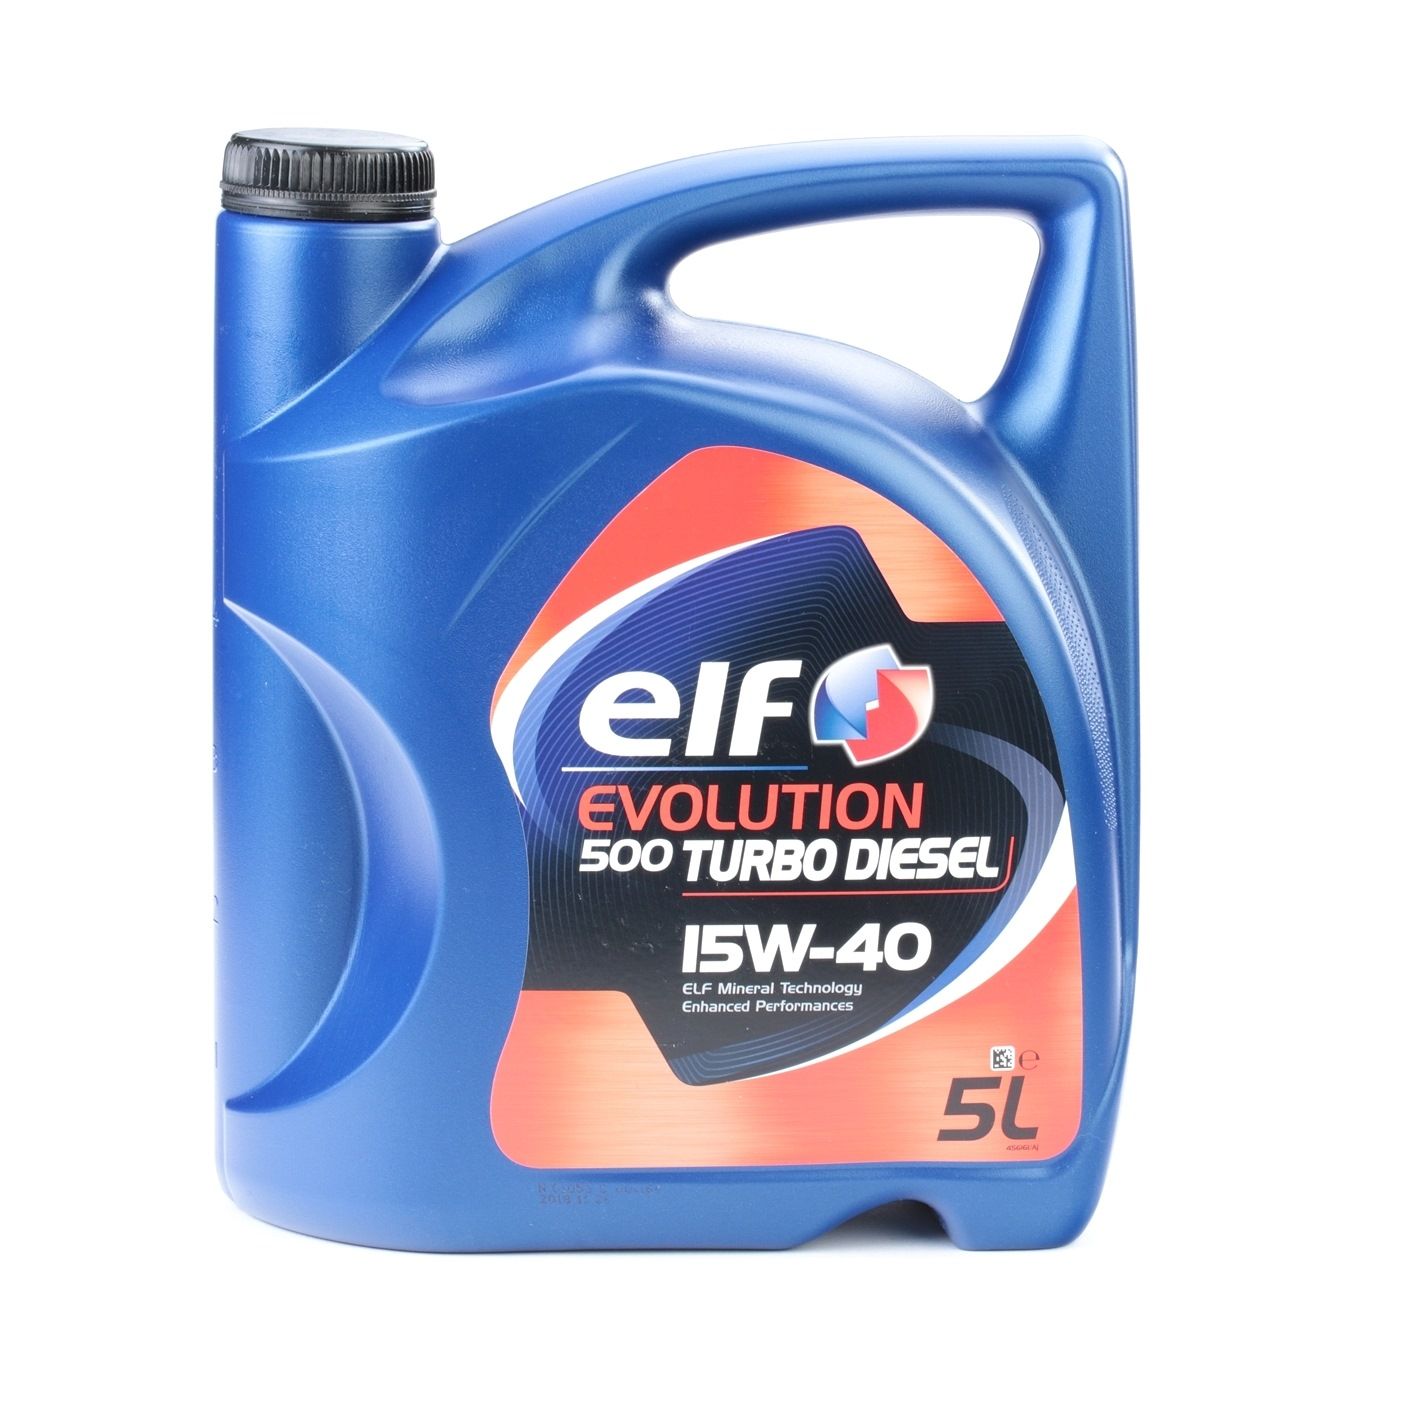 Kaufen Motorenöl ELF 2196568 Evolution, 500 Turbo Diesel 15W-40, 5l, Mineralöl